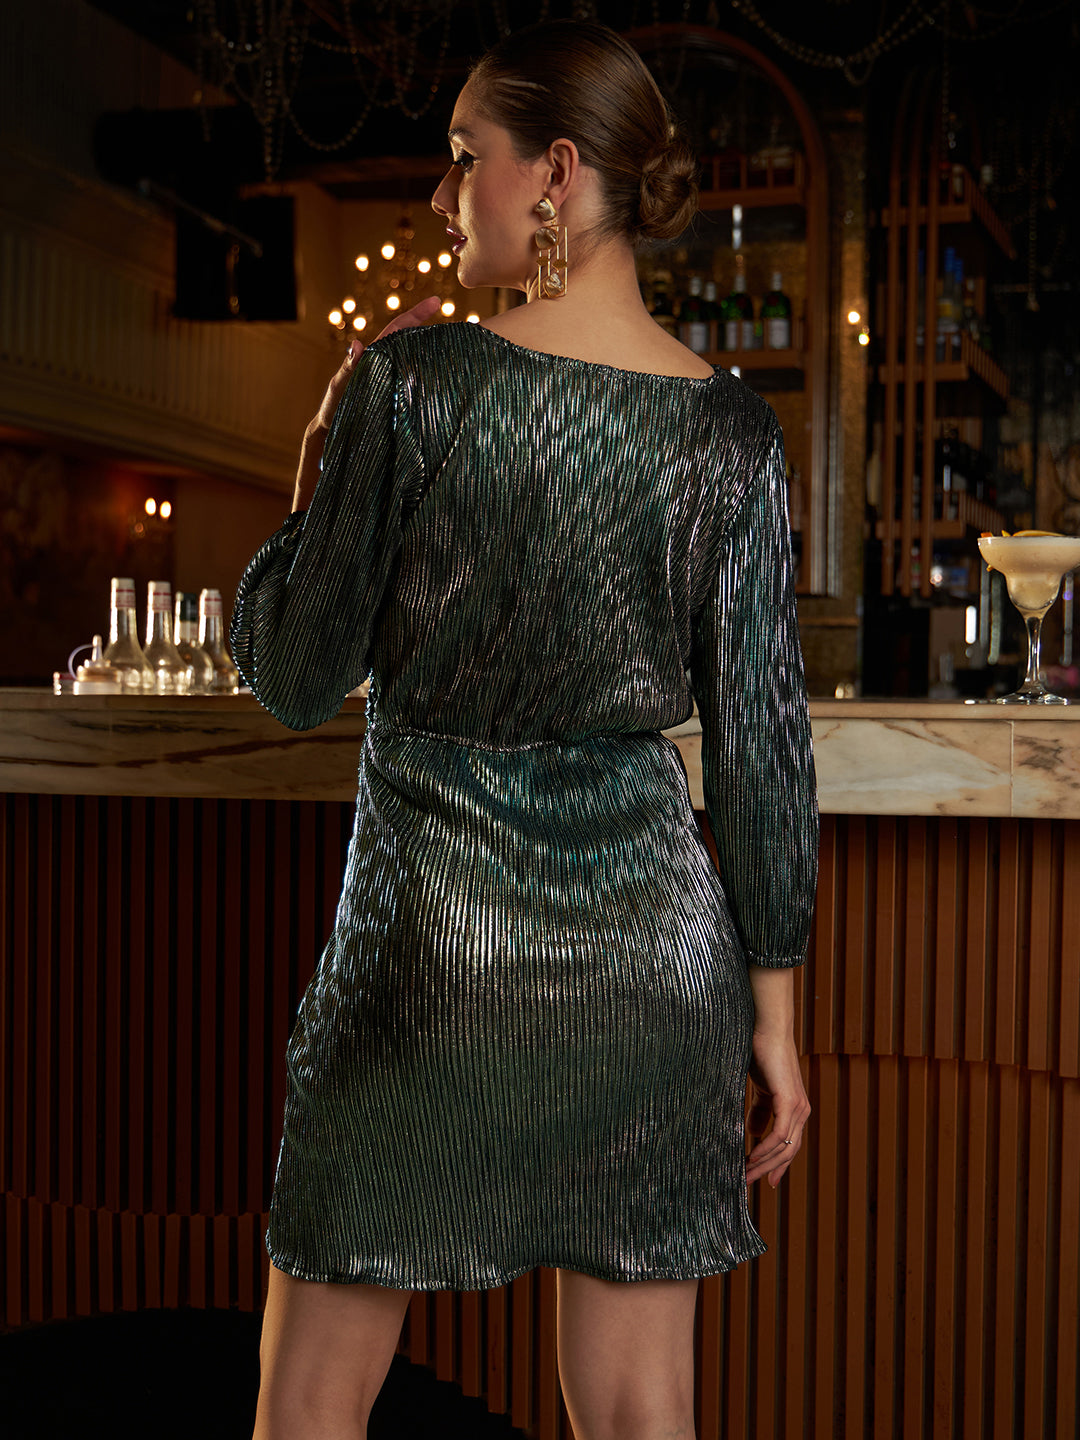 Athena Green Sheath Dress - Athena Lifestyle